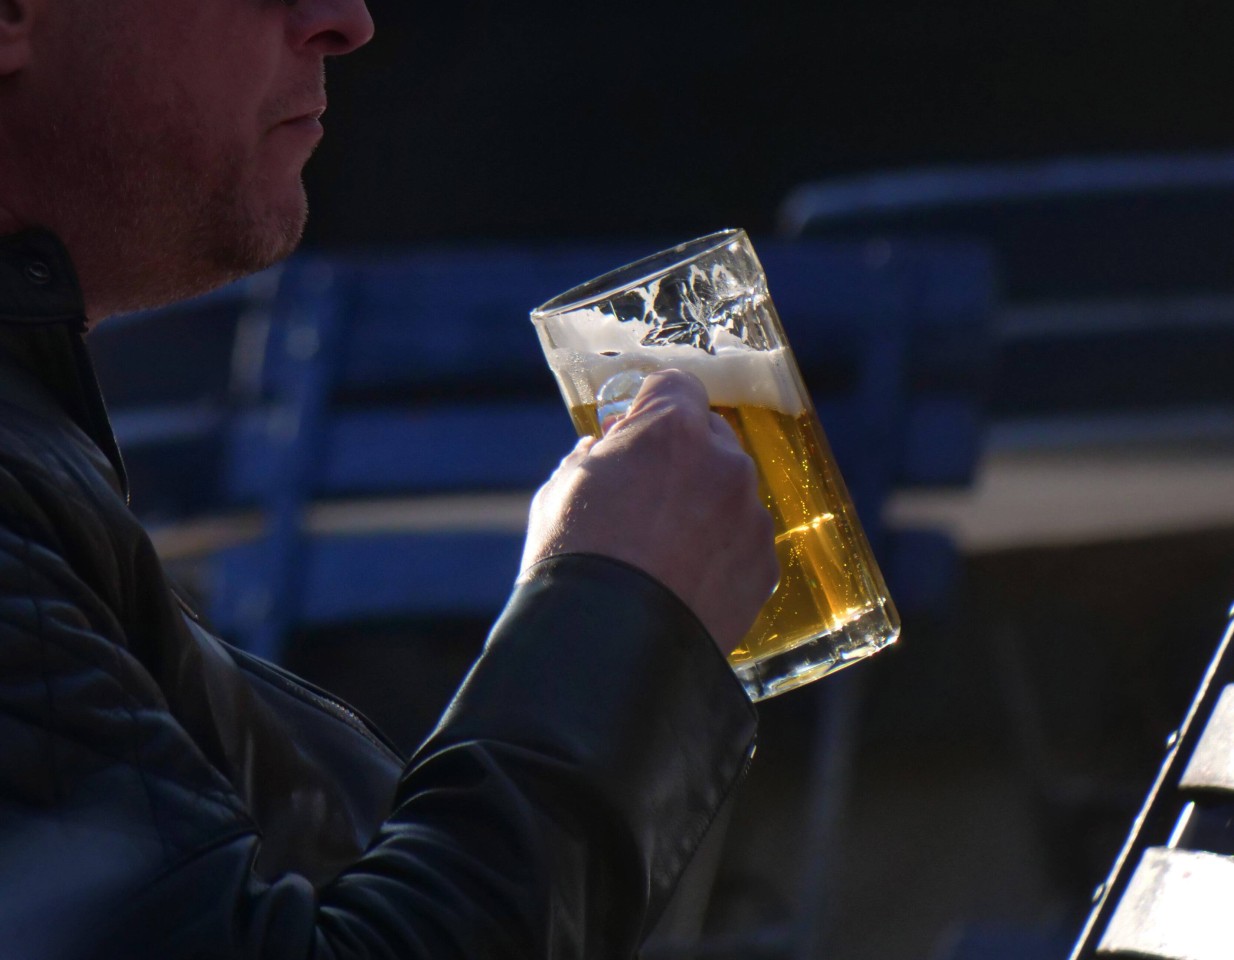 Bittere Nachricht aus Dortmund: Ein Biergarten muss überraschend dicht machen. (Symbolbild)